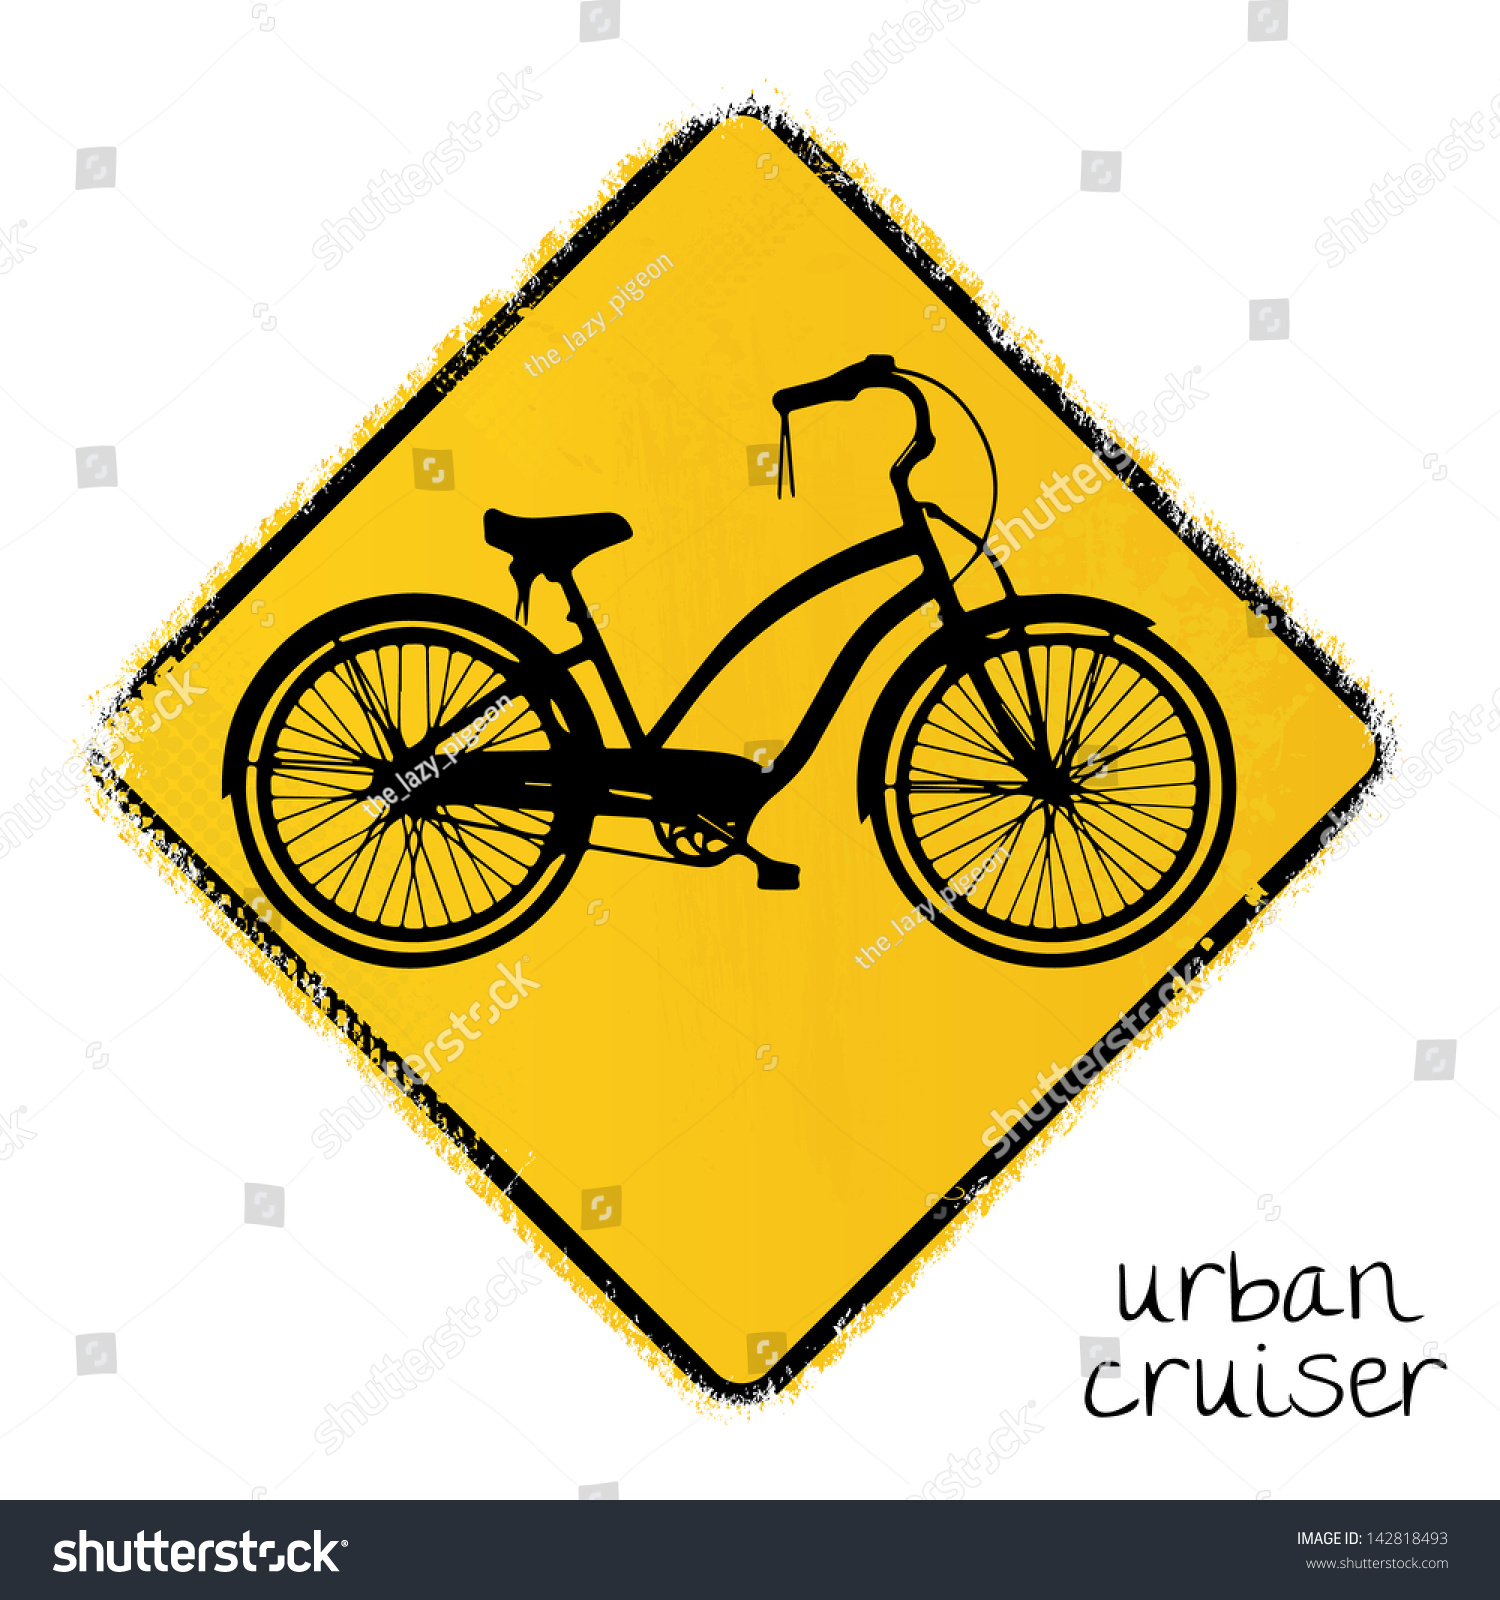 urban cruiser bike